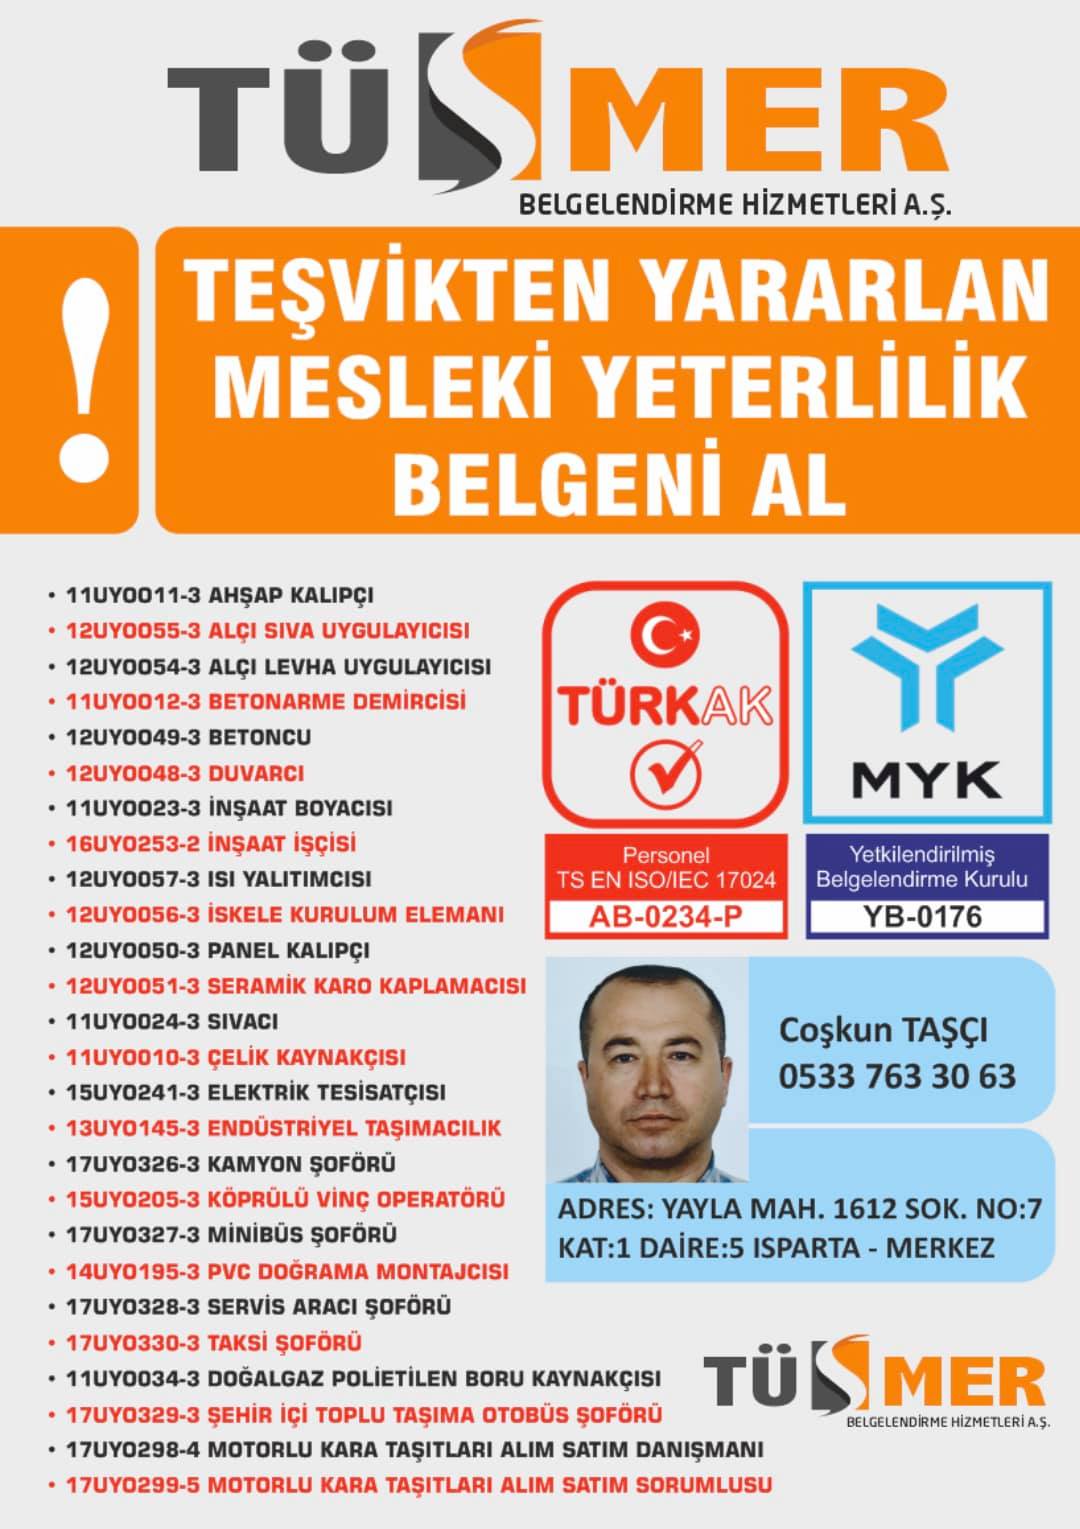 MYK MESLEKİ YETERLİLİK BELGESİ GüvenGüngören İstanbul